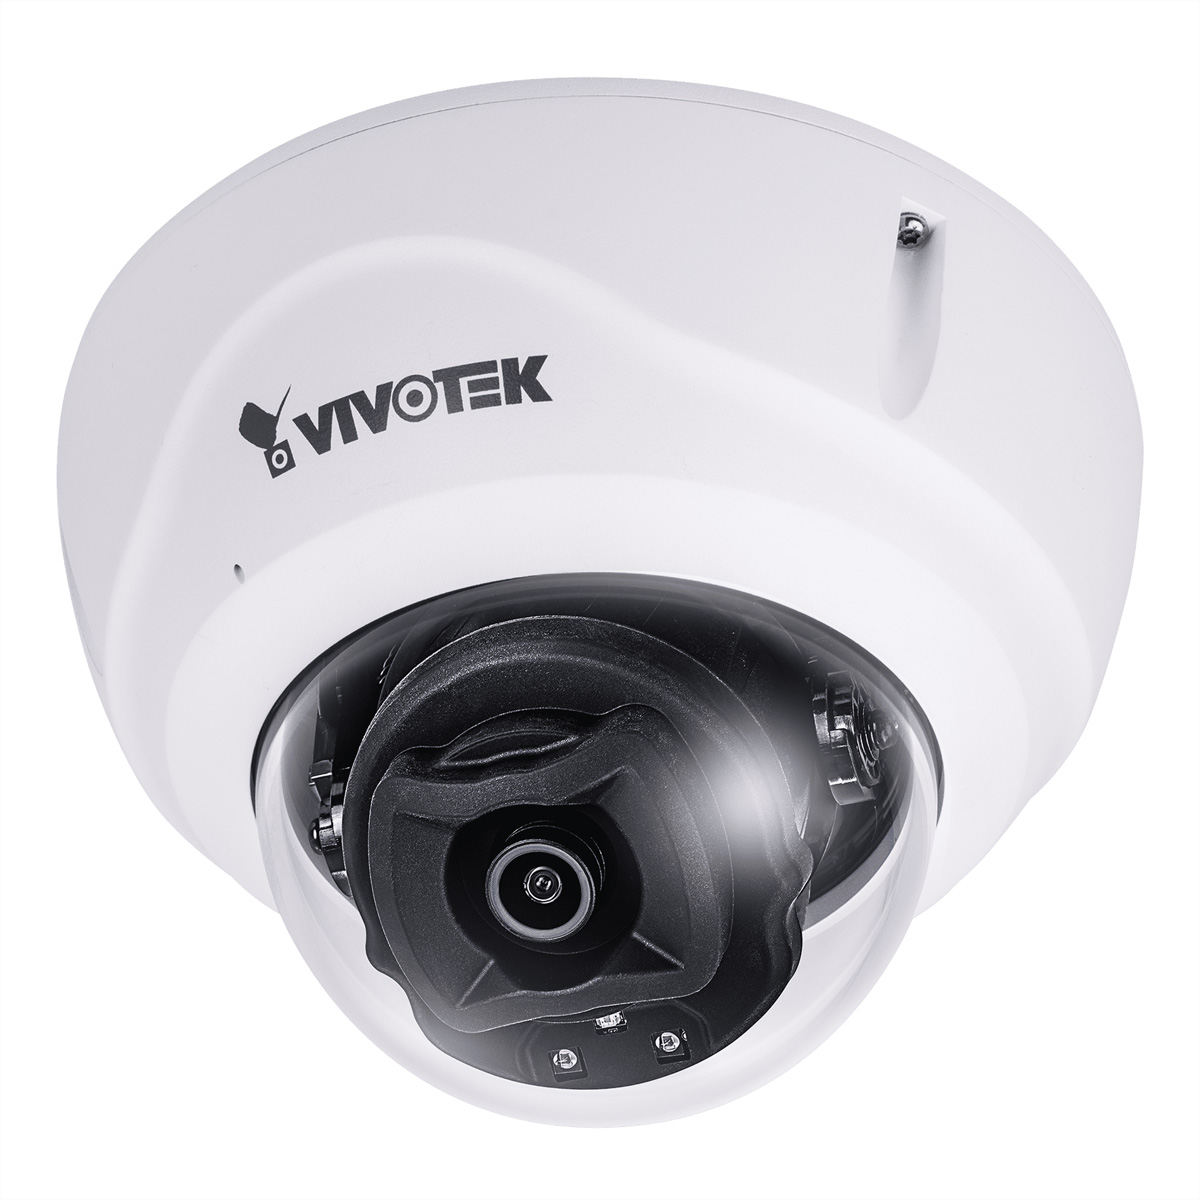 VIVOTEK FD9388-HTV - Netzwerk-Überwachungskamera - Kuppel - Außenbereich - Vandalismussicher / Wette